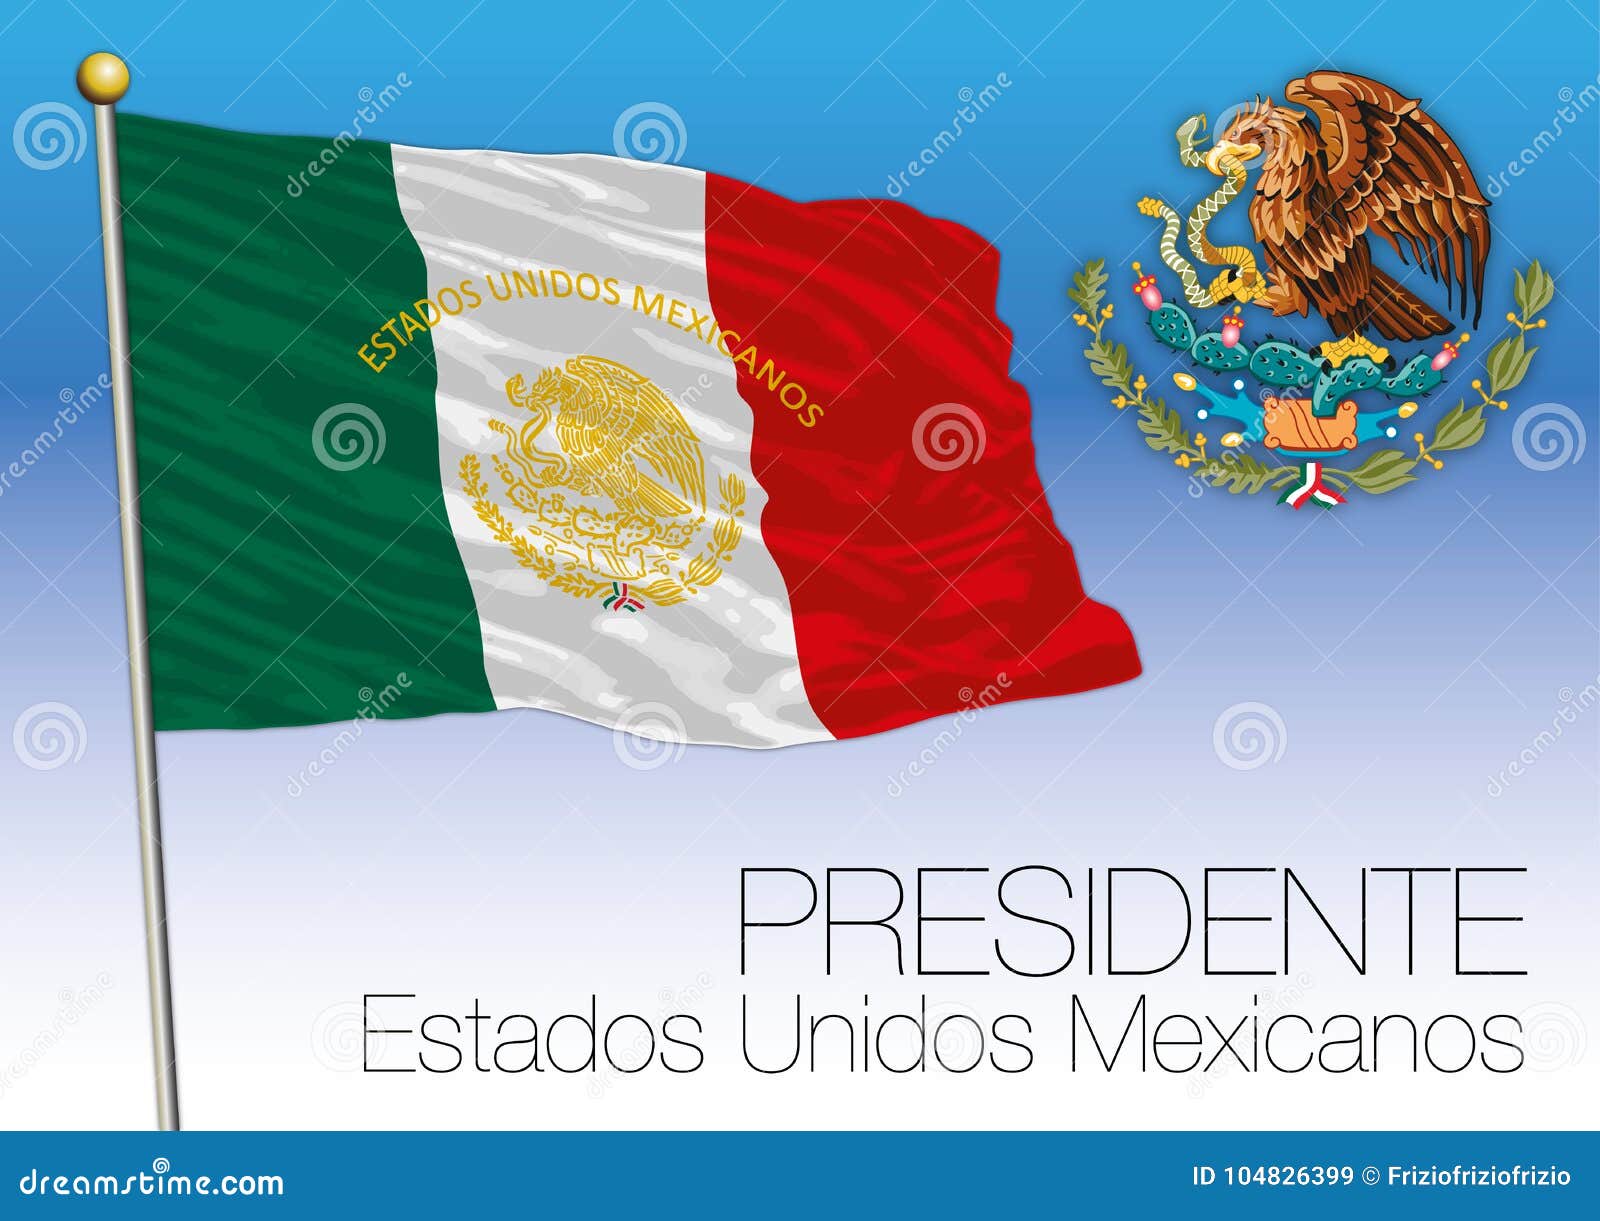 mexico, presidential flag and coat of arms, estados unidos mexicanos